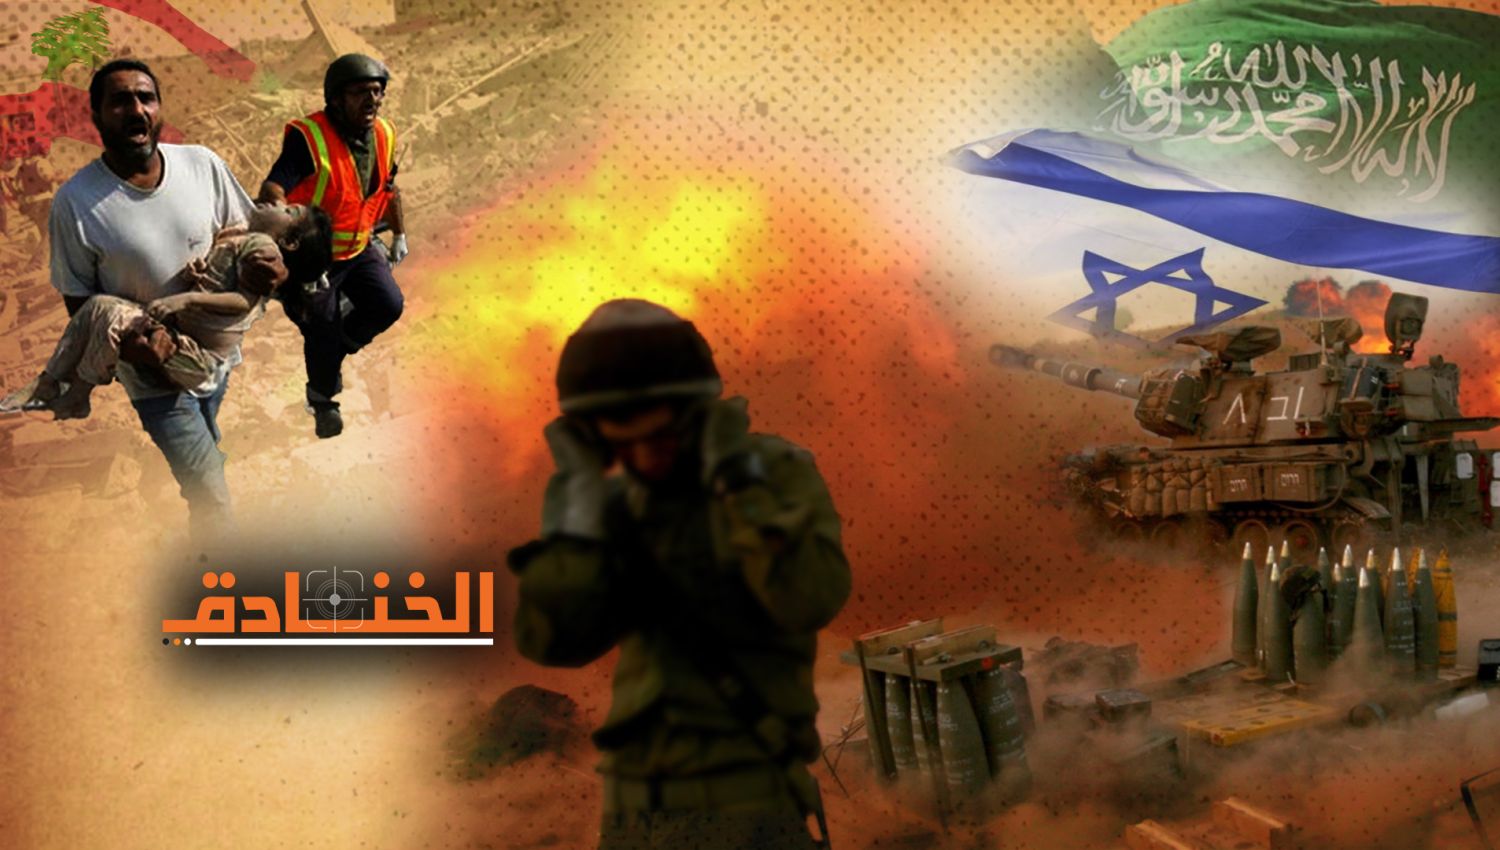 كيف شاركت السعودية في حروب إسرائيل على المقاومة؟